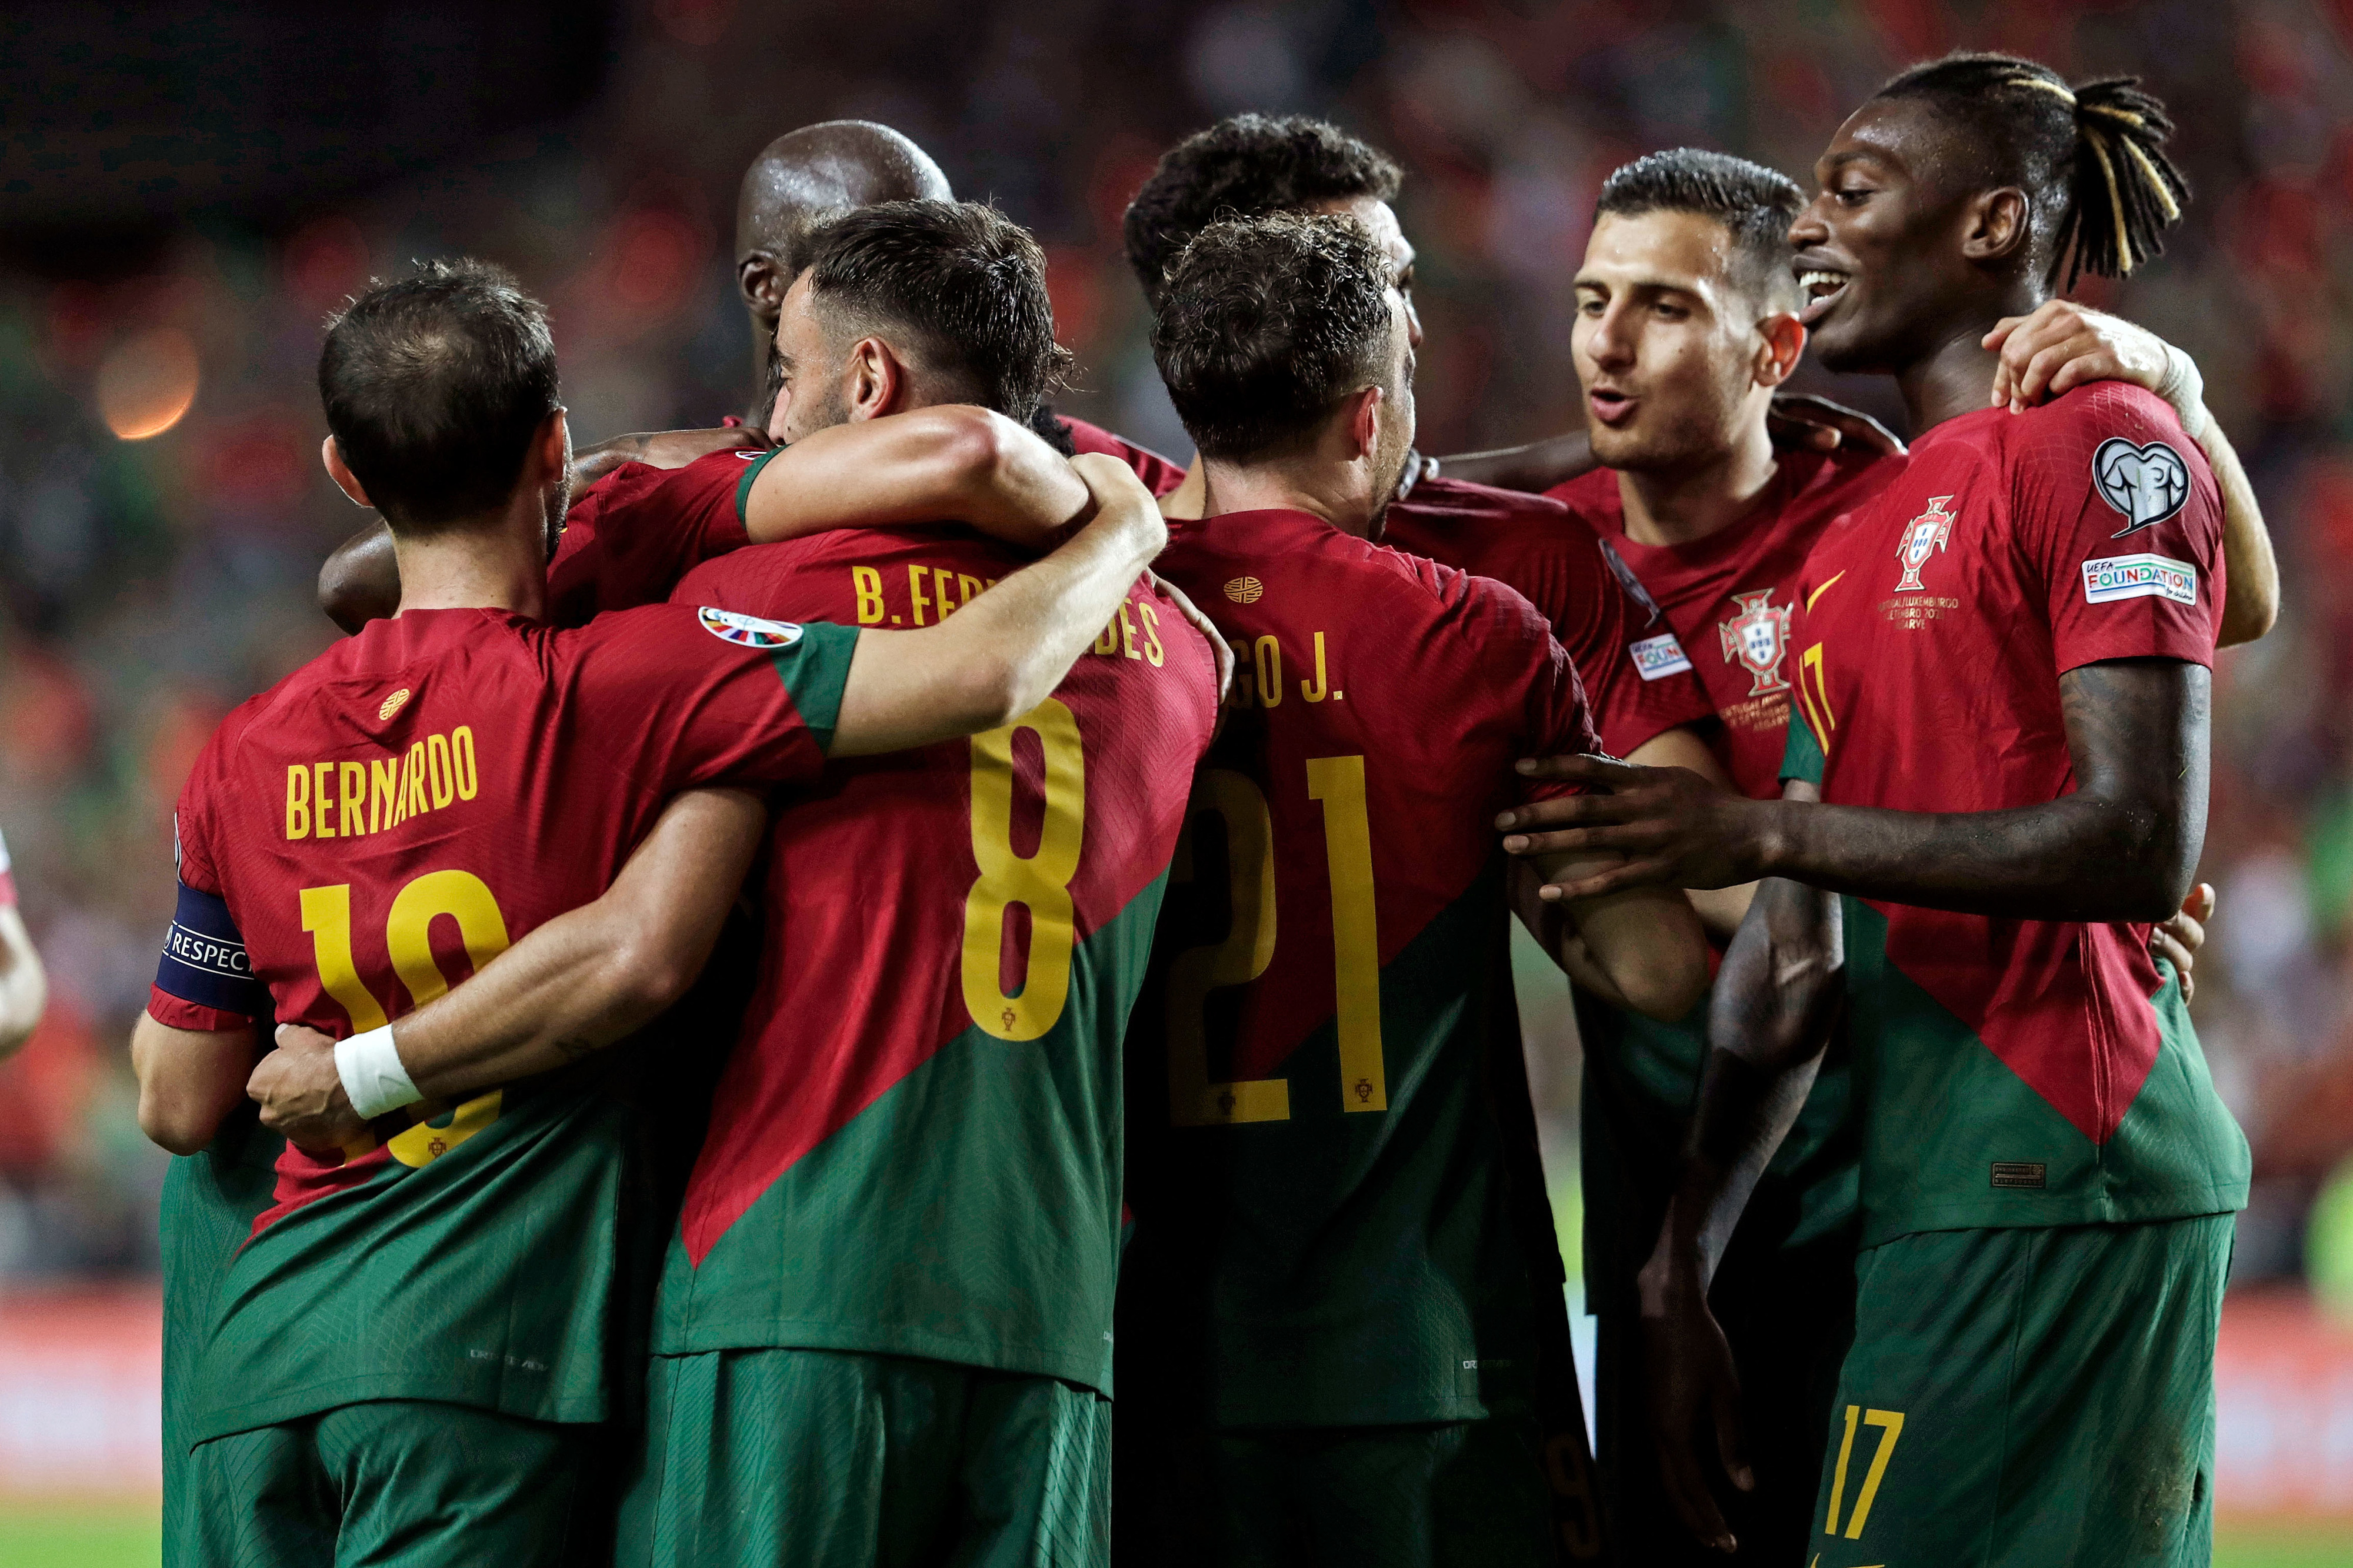 Portugal vs Espanha - Um contra cinco no Twitter - Euro - SAPO